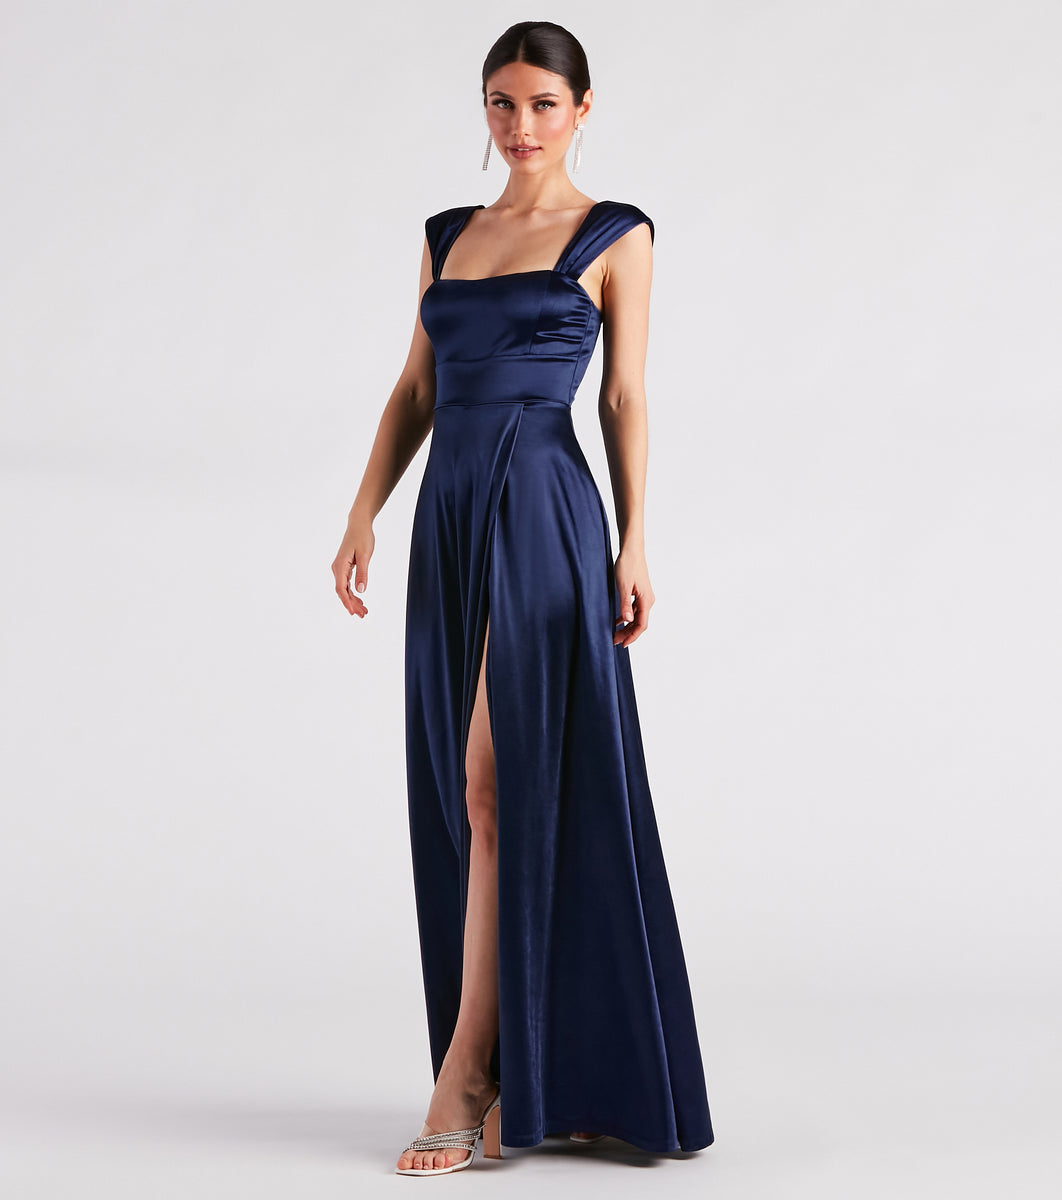 Lisa Satin High Slit A-Line Formal Dress & Windsor